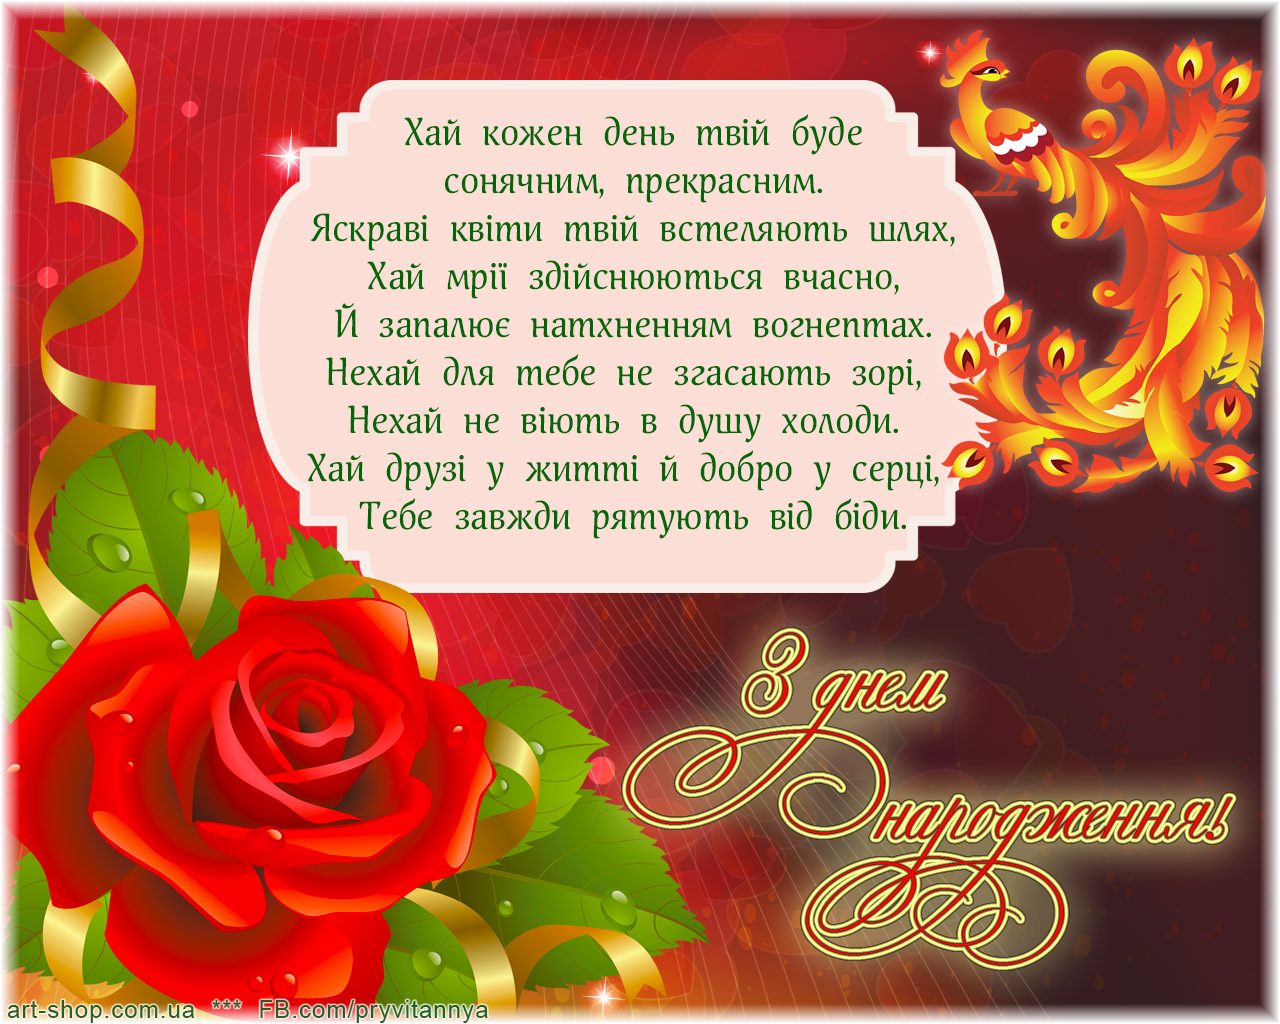 Поздравление сестре на украинском. Привітання з днем народження. Открытка с днем рождения на украинском. Поздравления с днём рождения на украинском языке. Красивое поздравление с днём рождения на украинском языке.